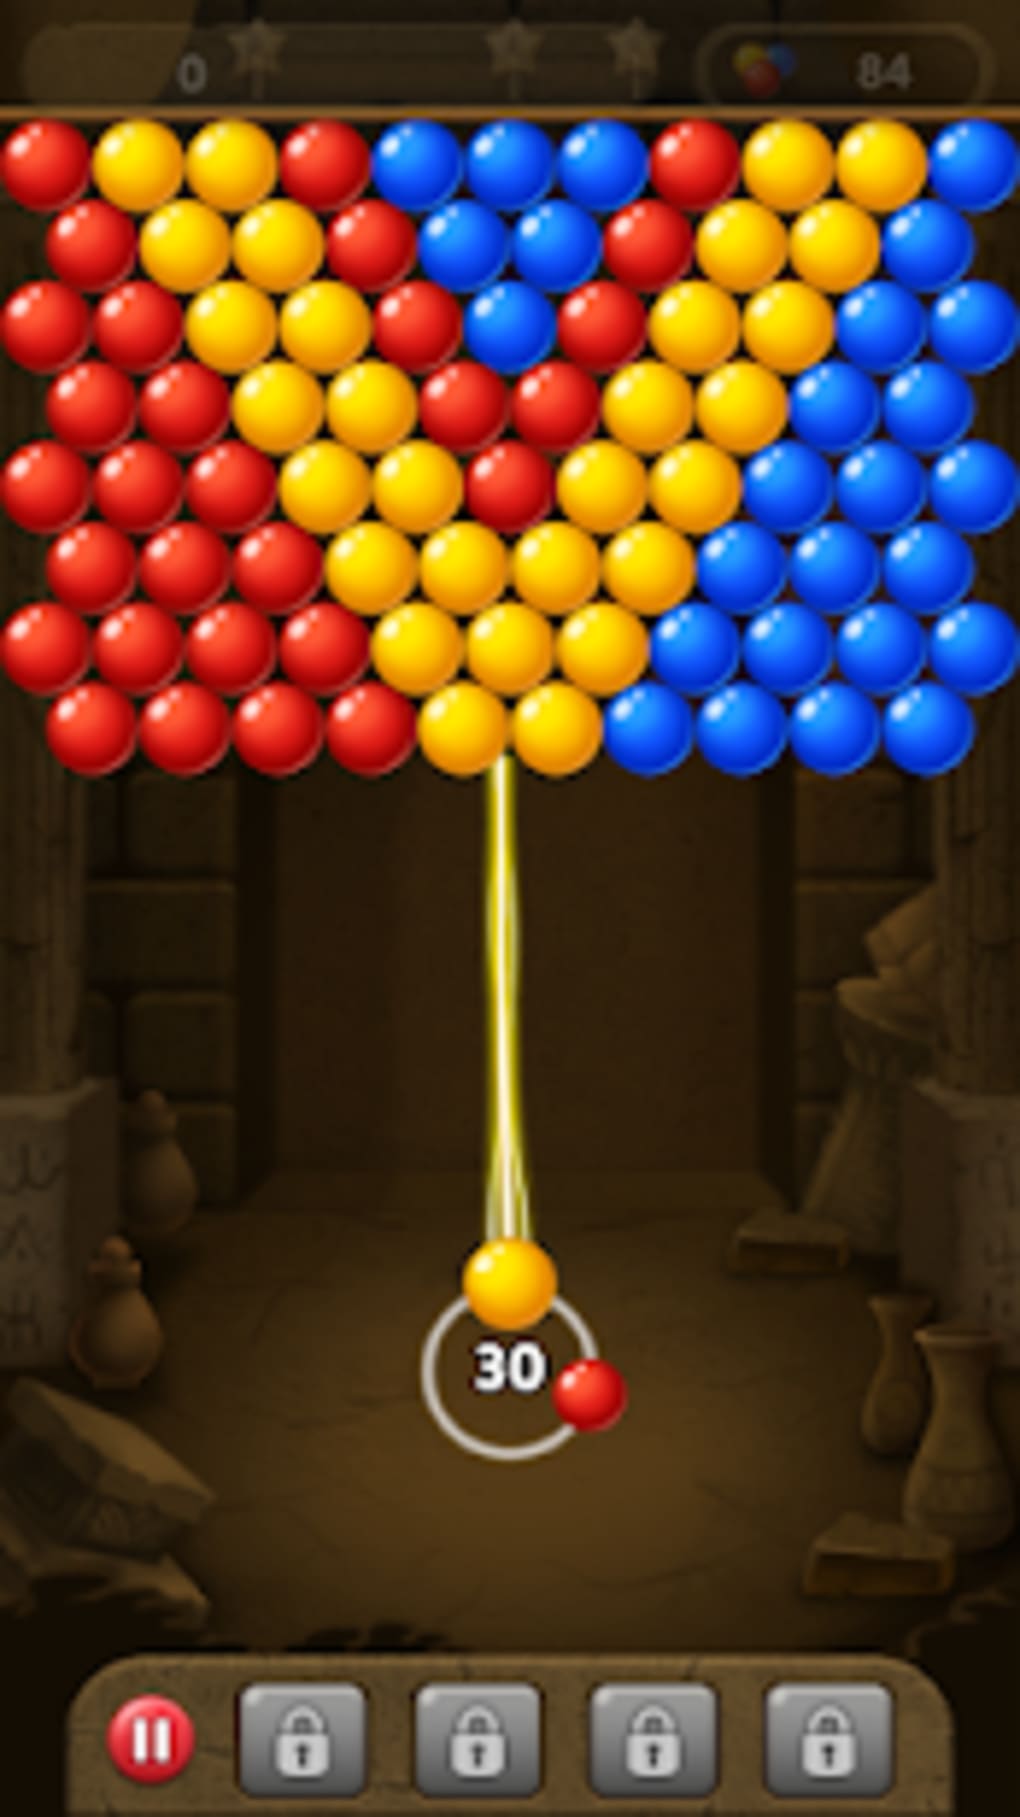 Bubble shooter gem puzzle pop game - Level 1,2,3,4,5,6,7,8,9,10